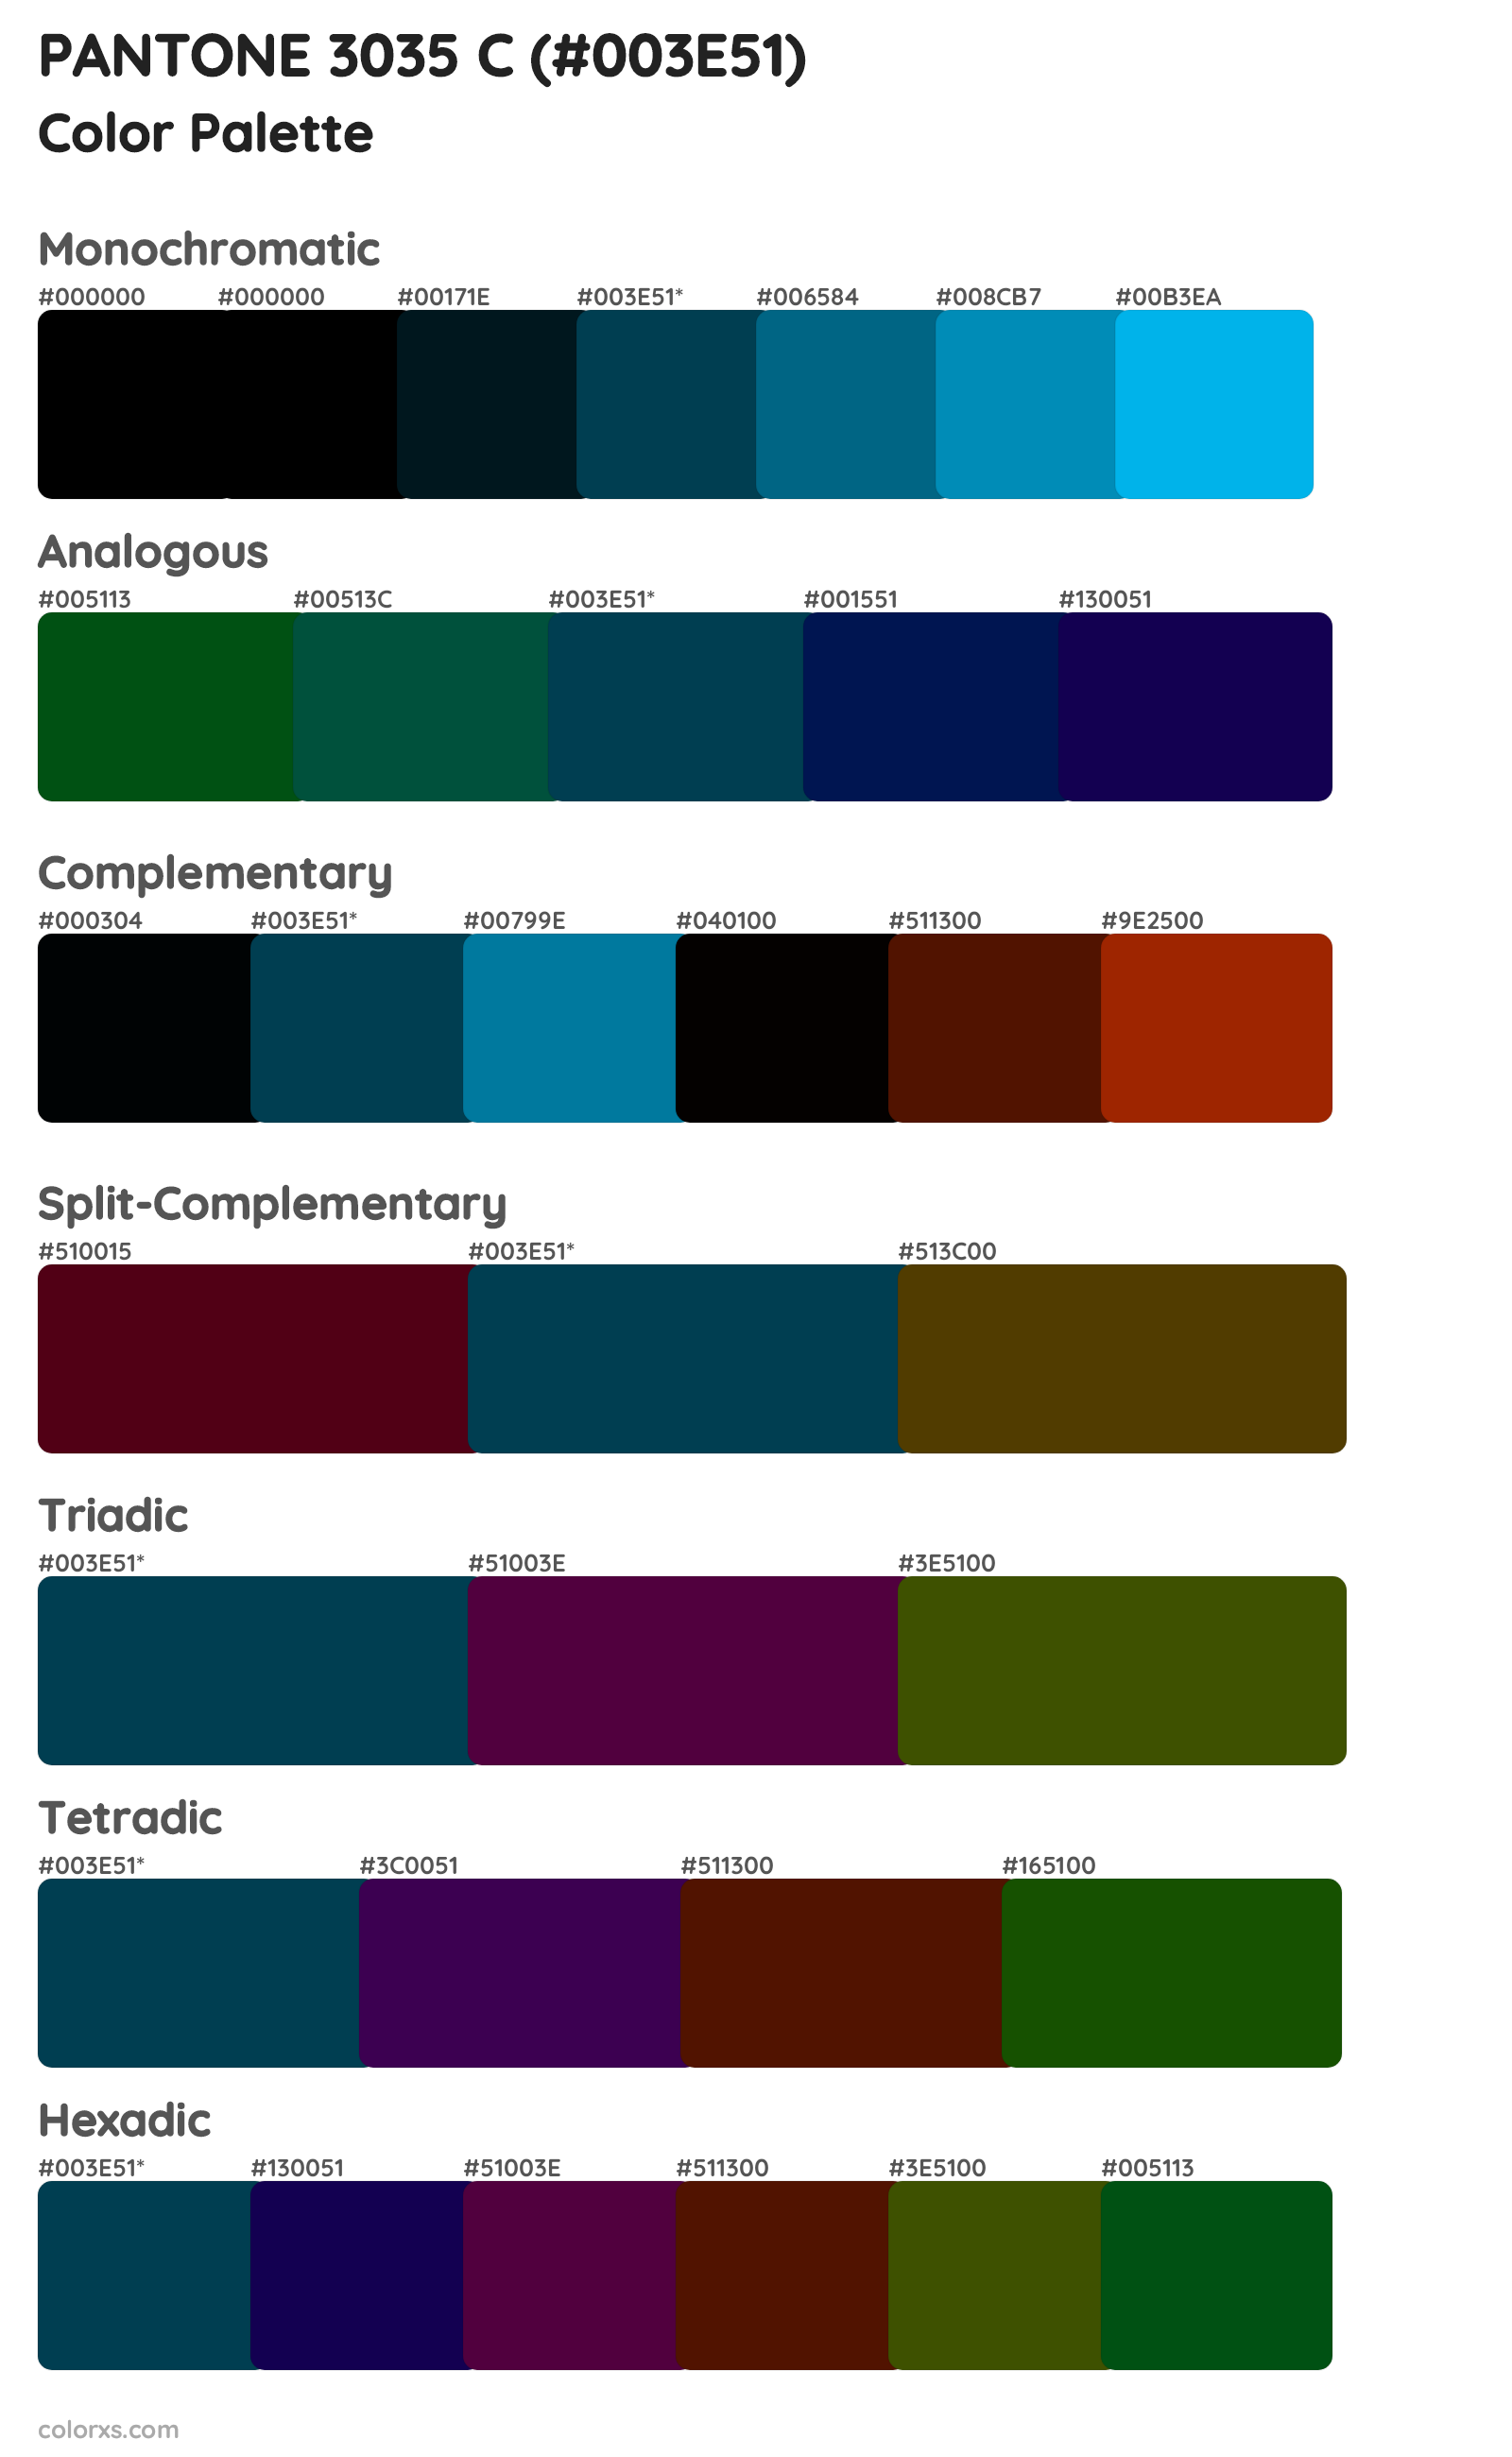 PANTONE 3035 C Color Scheme Palettes